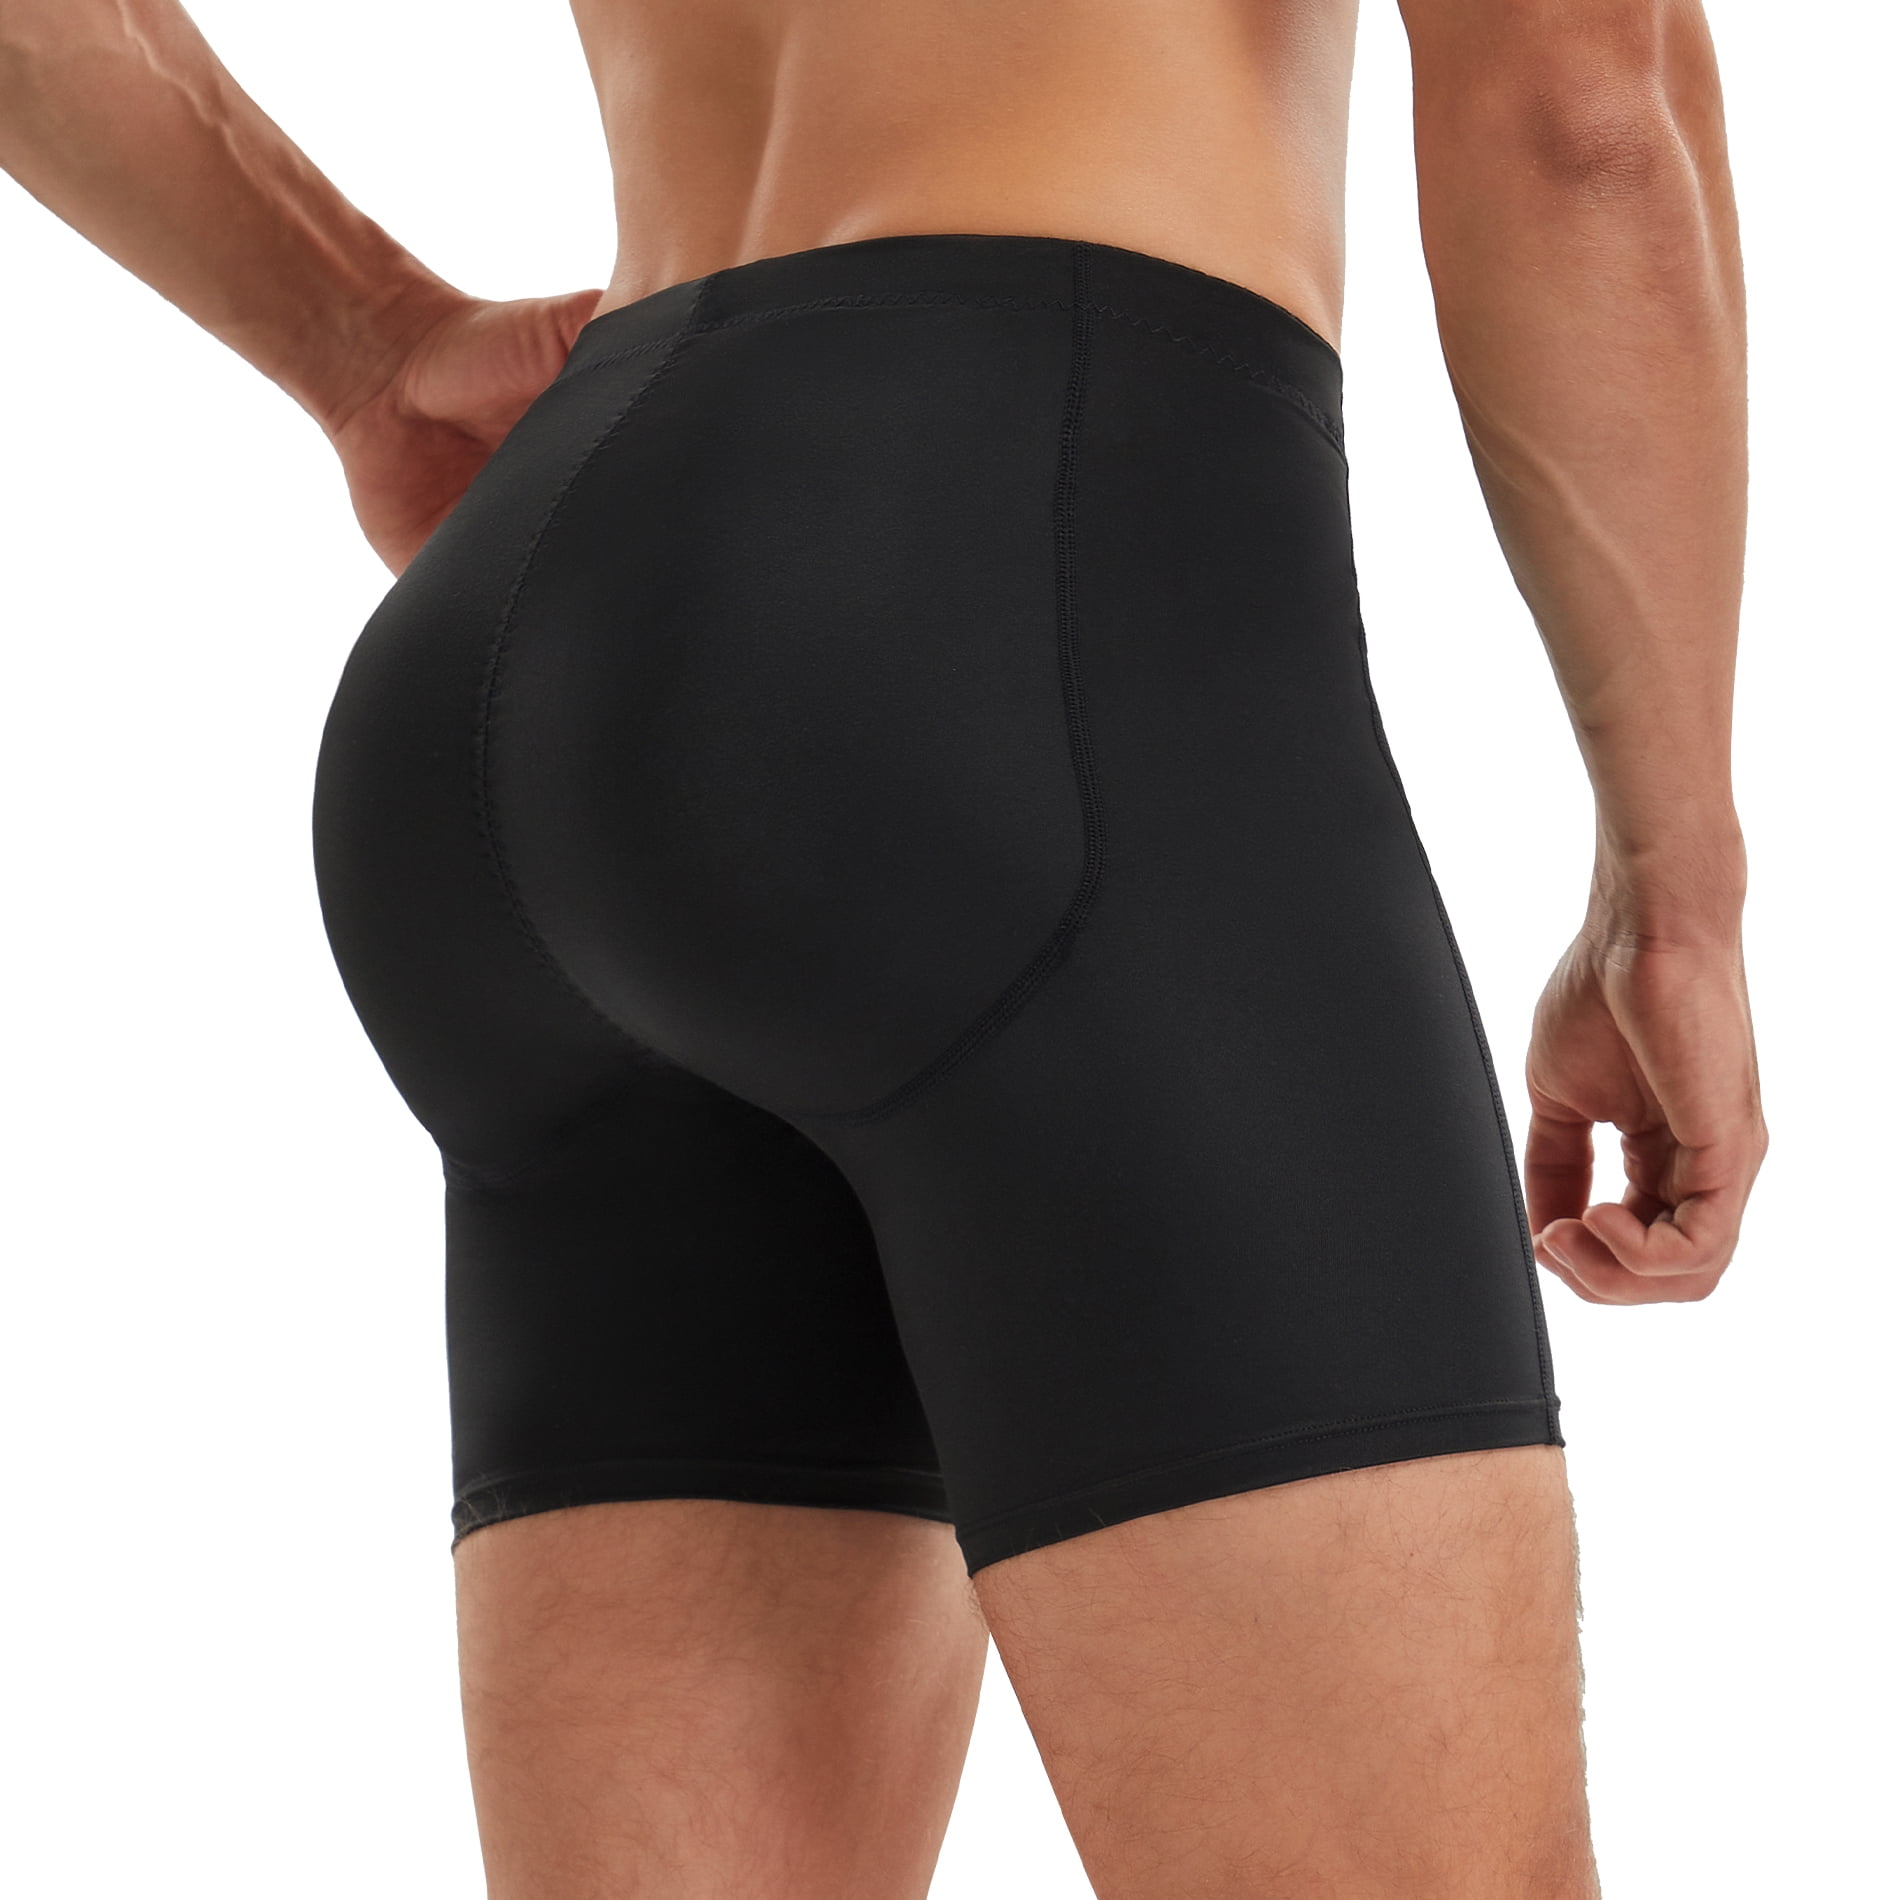 Men Padded Shaper Shorts Underwear for Big Butt Enhance Butt Lifter Boxer  Briefs